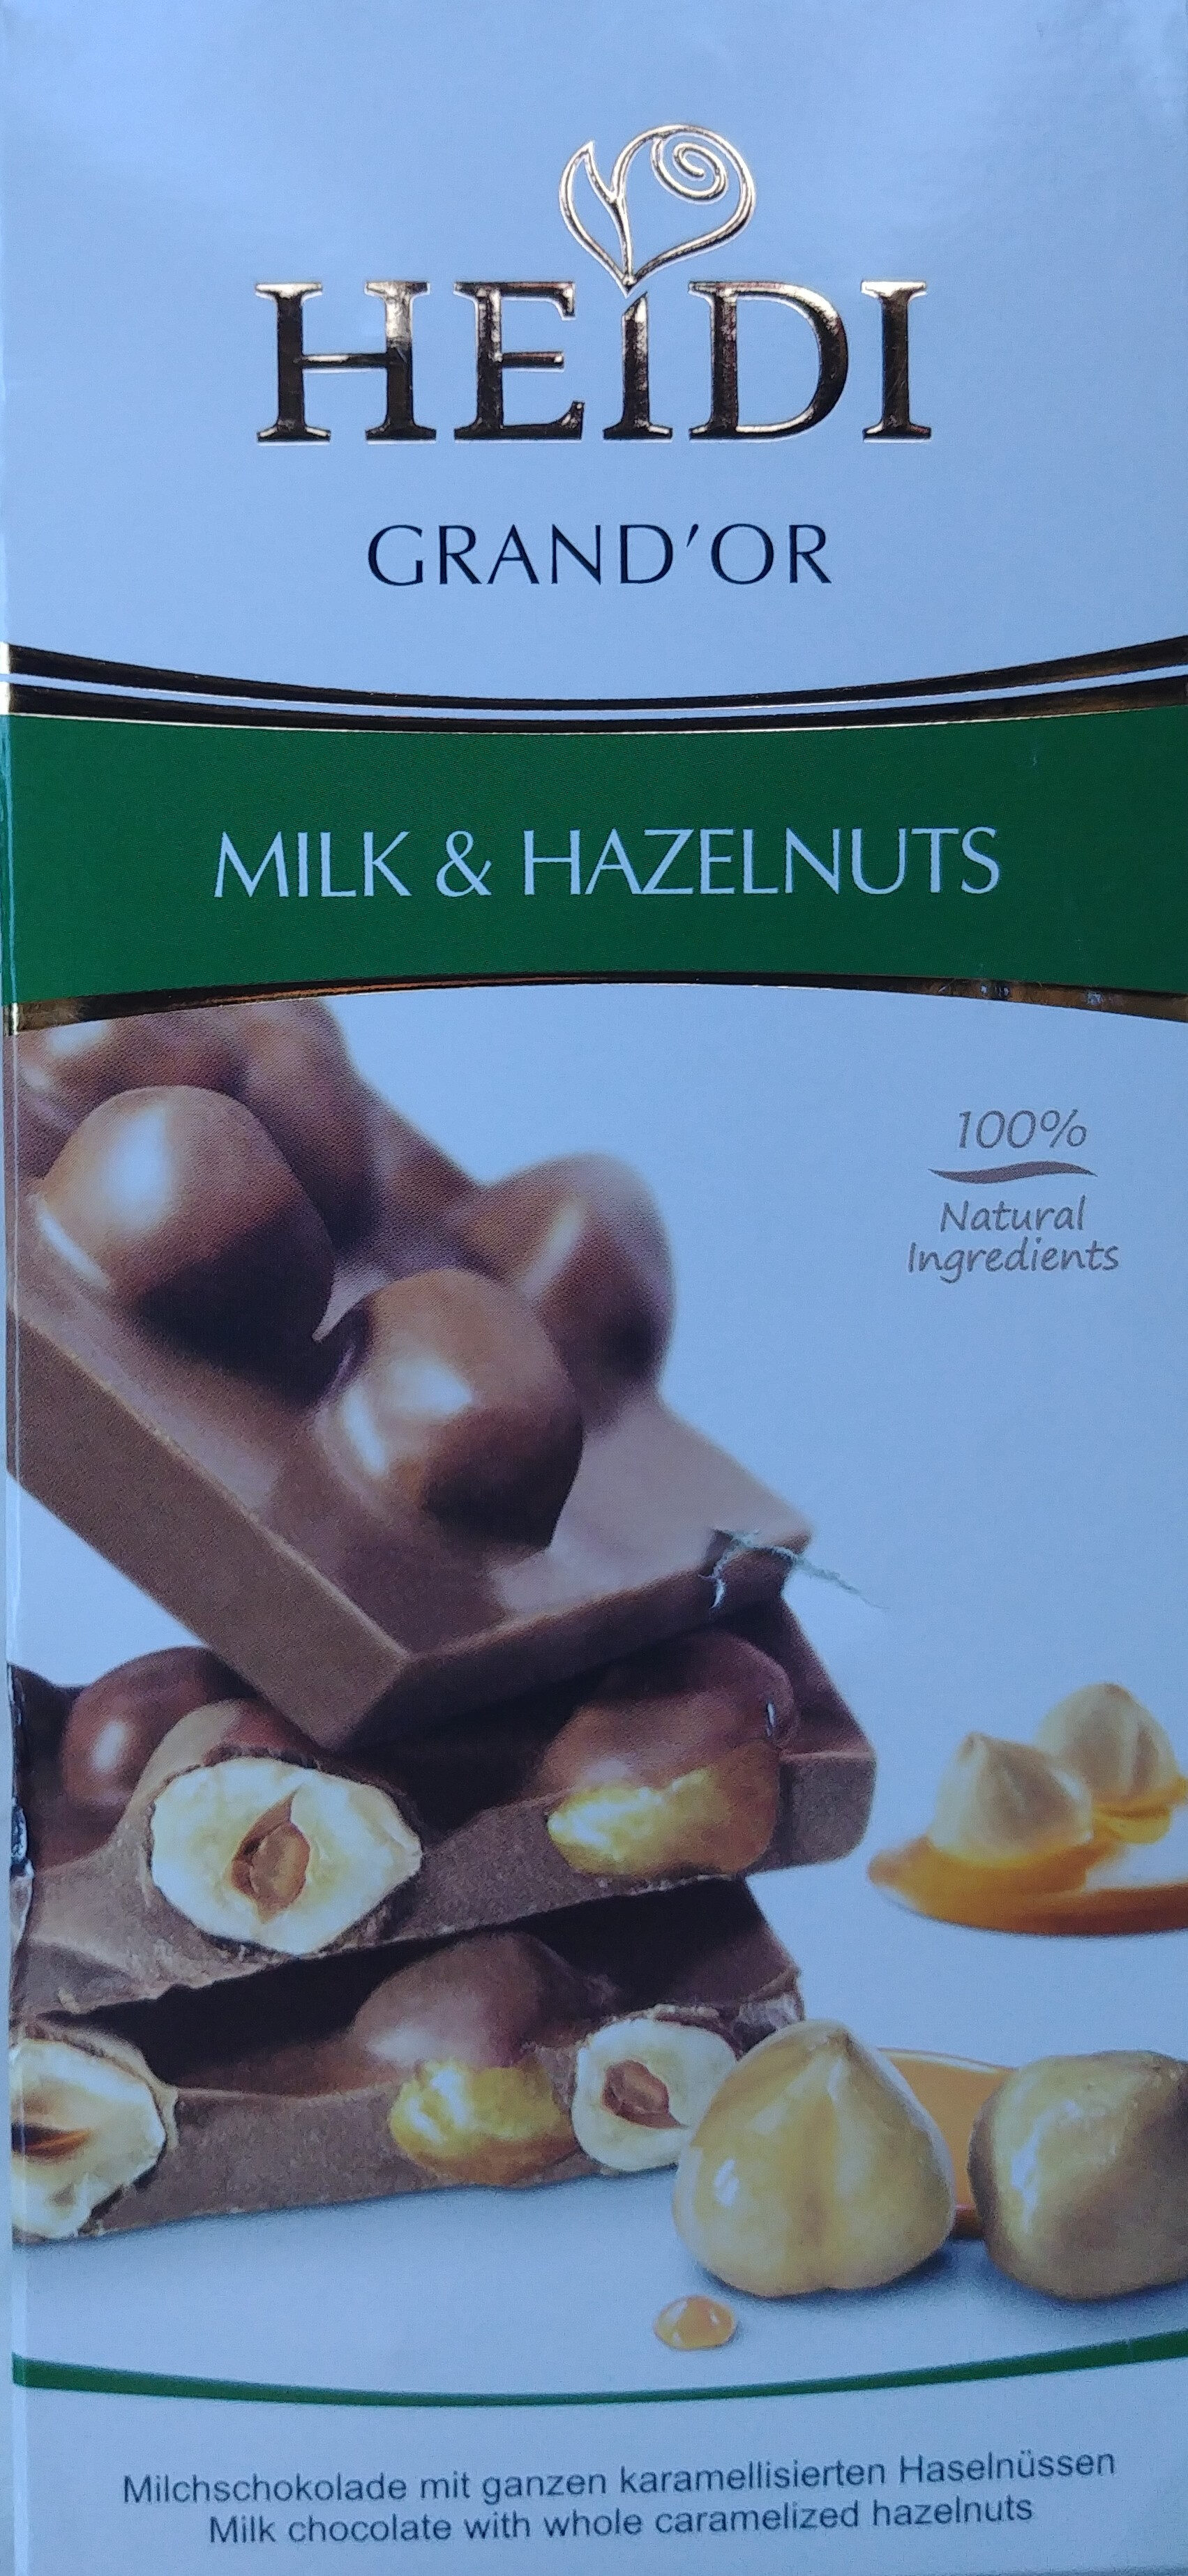 Milk & Hazelnut - Product - en